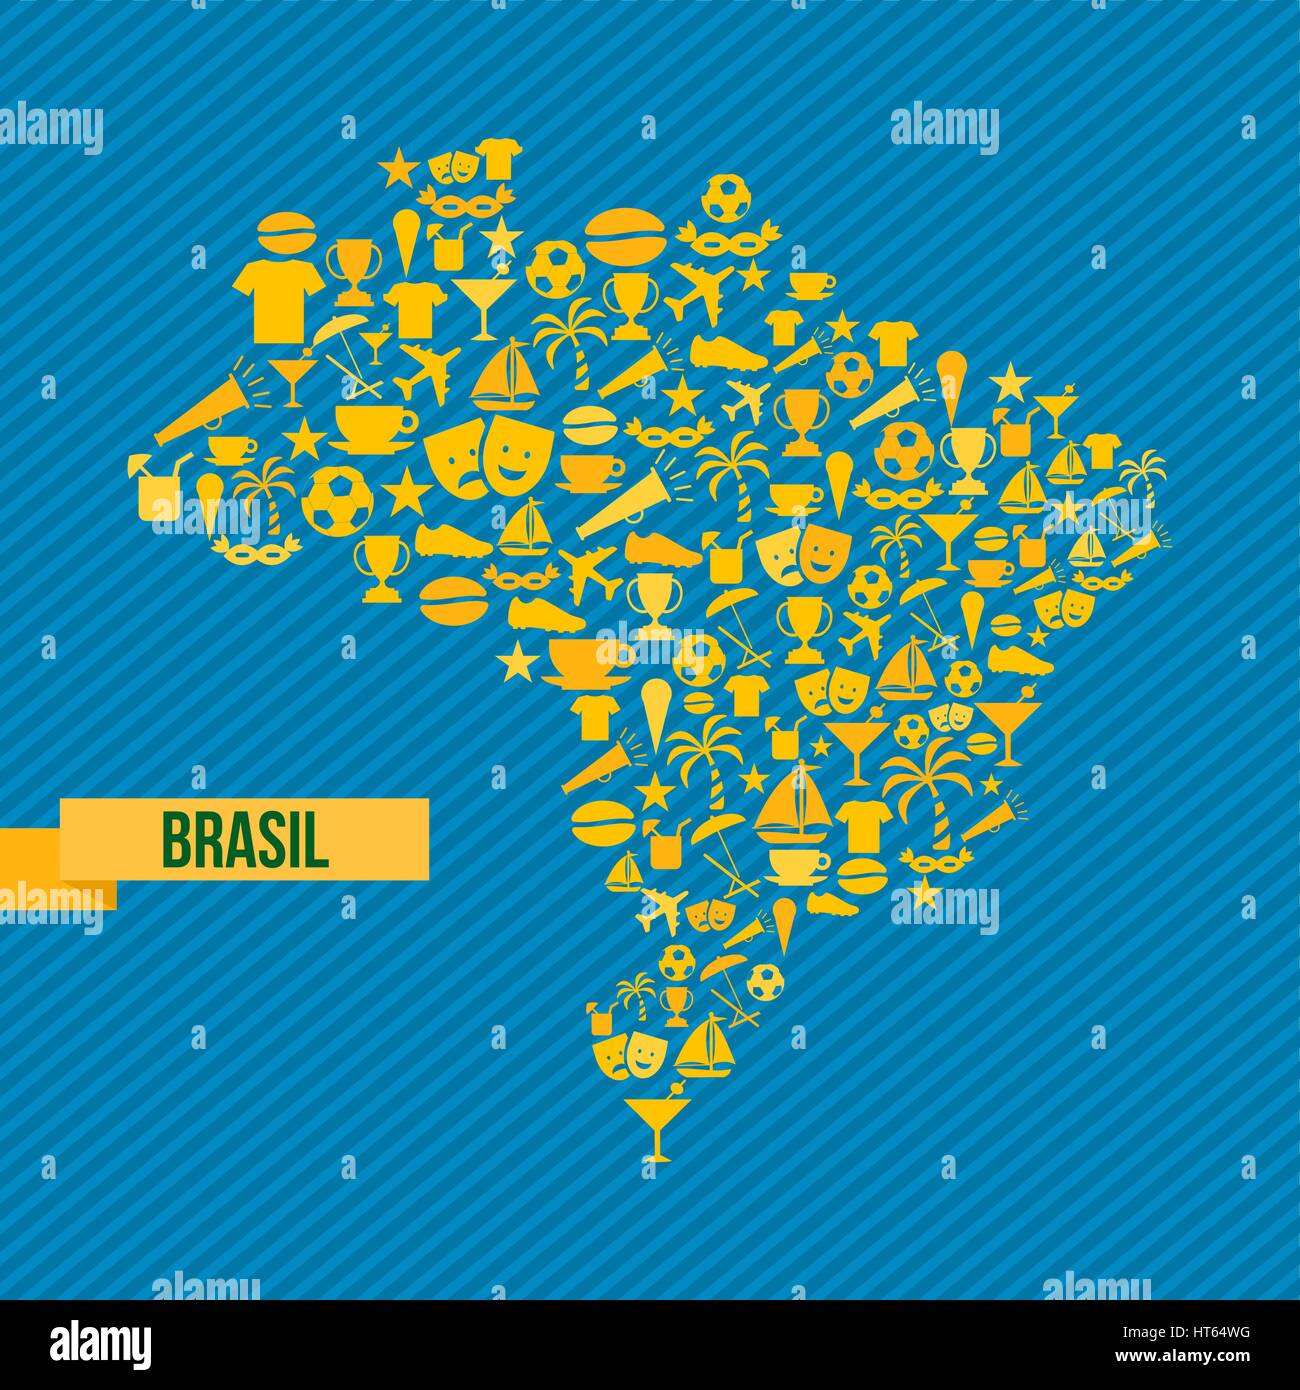 Soccer Icons In Brazil Map Shape Illustration. EPS10 Vector